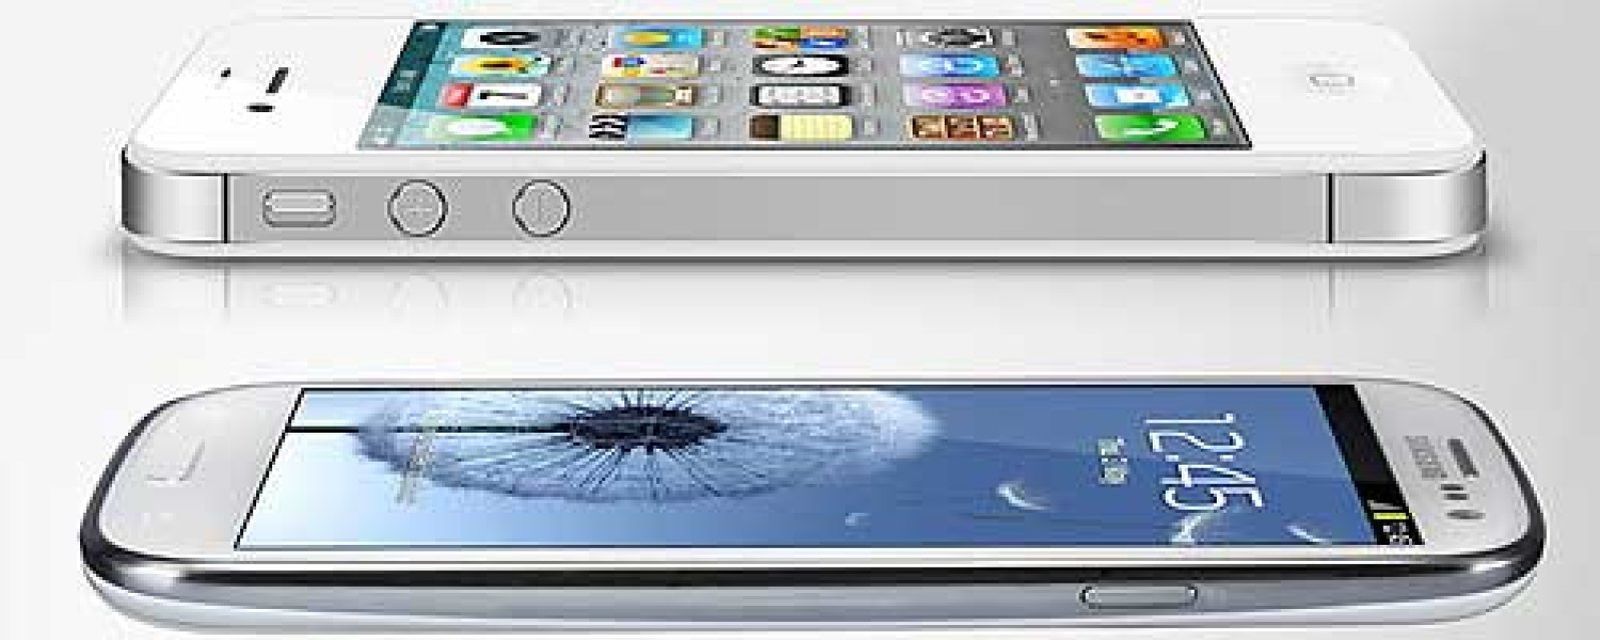 Foto: Fin del reinado de Apple: el Galaxy S III supera por primera vez en ventas al iPhone en EEUU